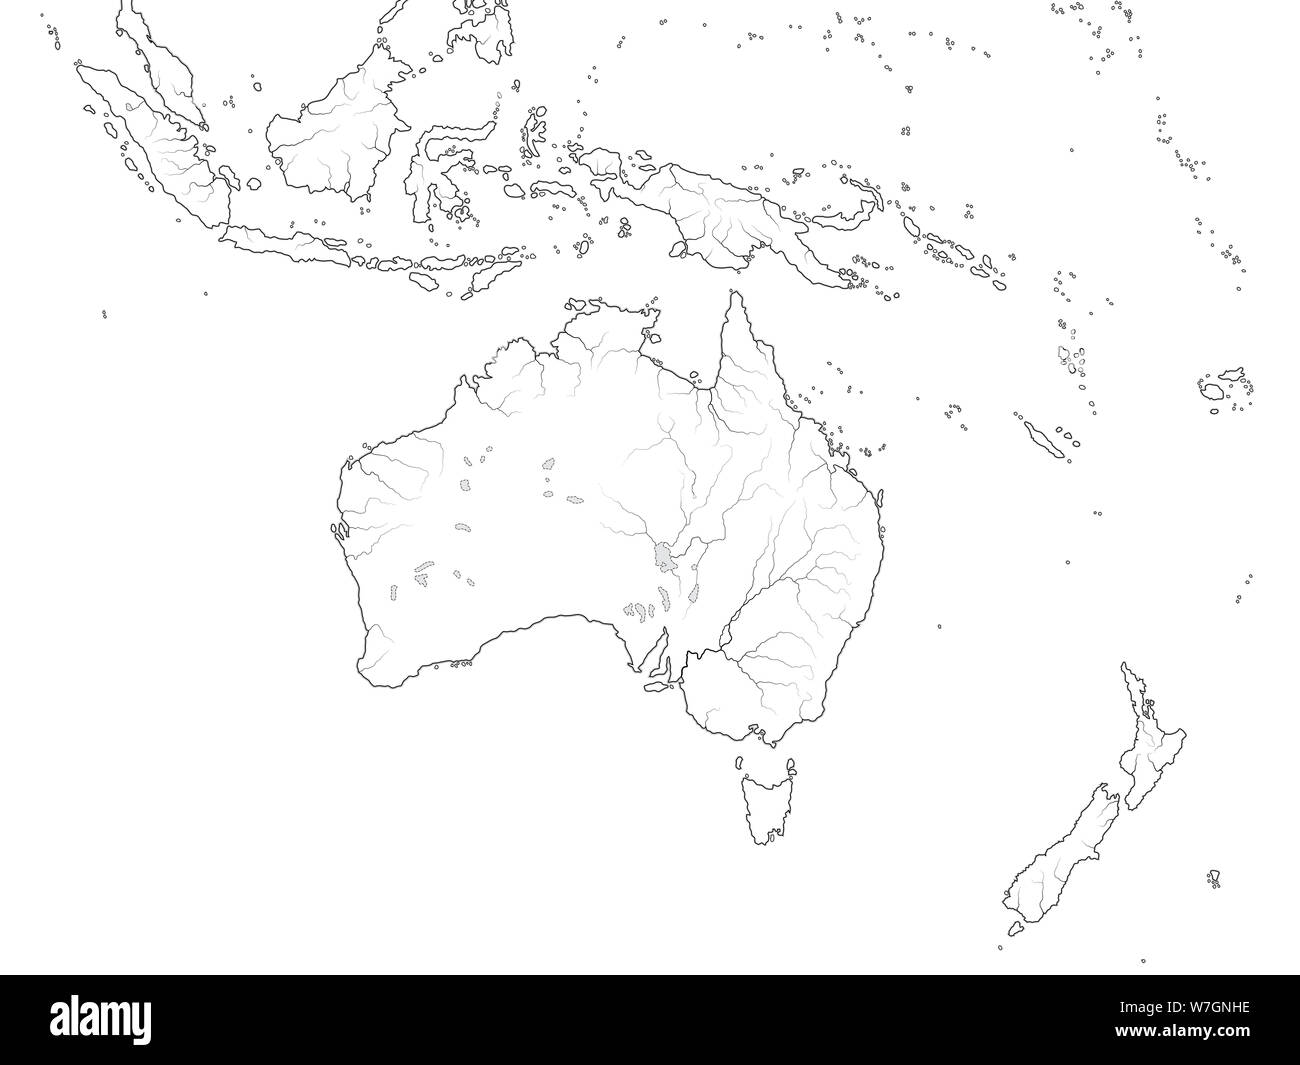 Carte du monde d'Australasie RÉGION : Australie, Nouvelle Guinée, Nouvelle-Zélande, Océanie, l'Indonésie, la Polynésie, l'océan Pacifique. Carte géographique avec le littoral. Banque D'Images